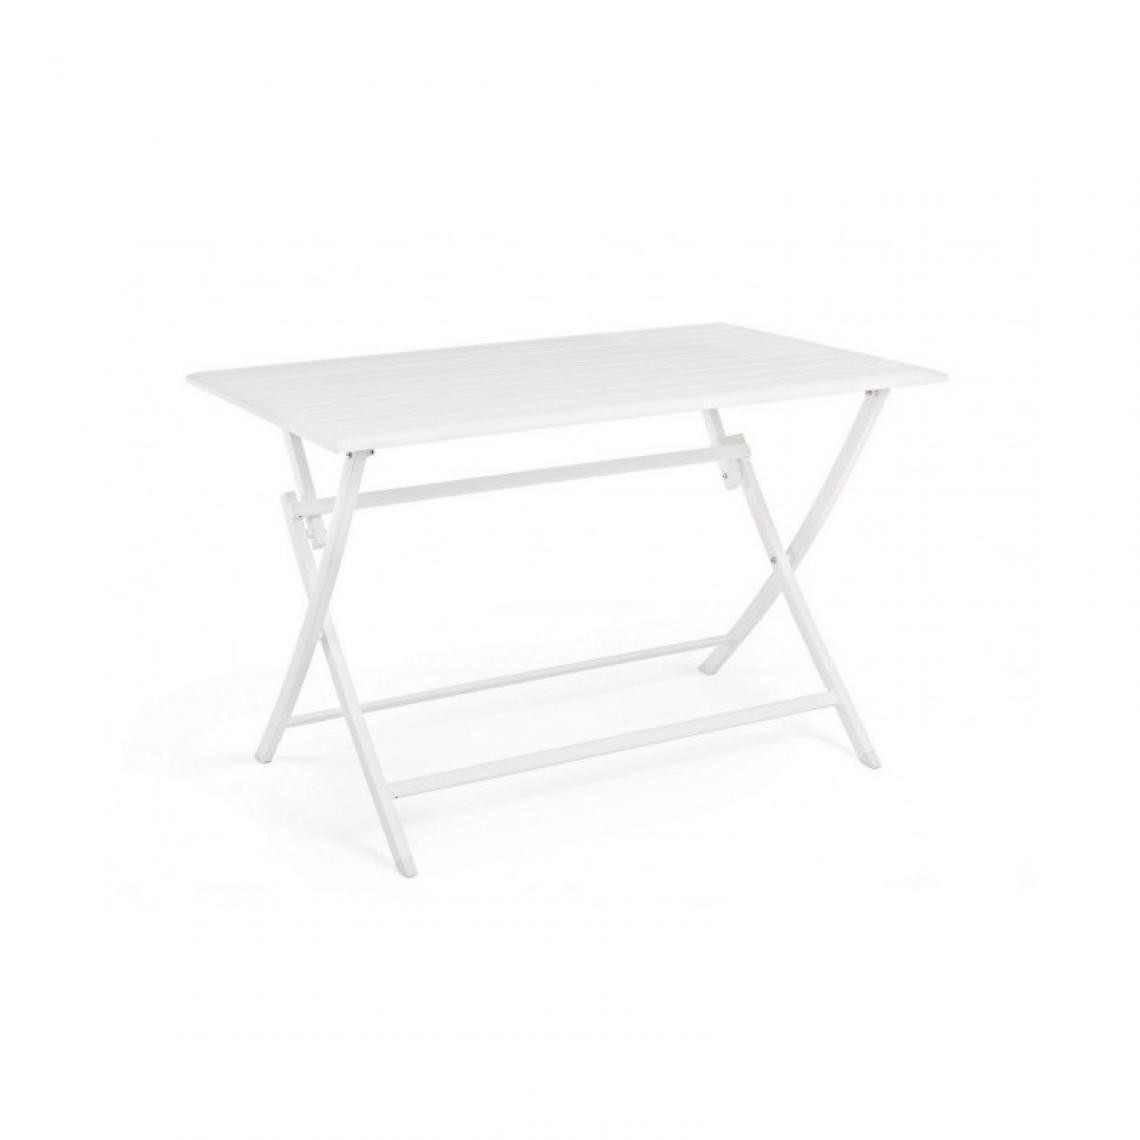 Bizzotto - Table extérieure Table pliante rectangle Elin 110 x 70 blanche - Tables de jardin